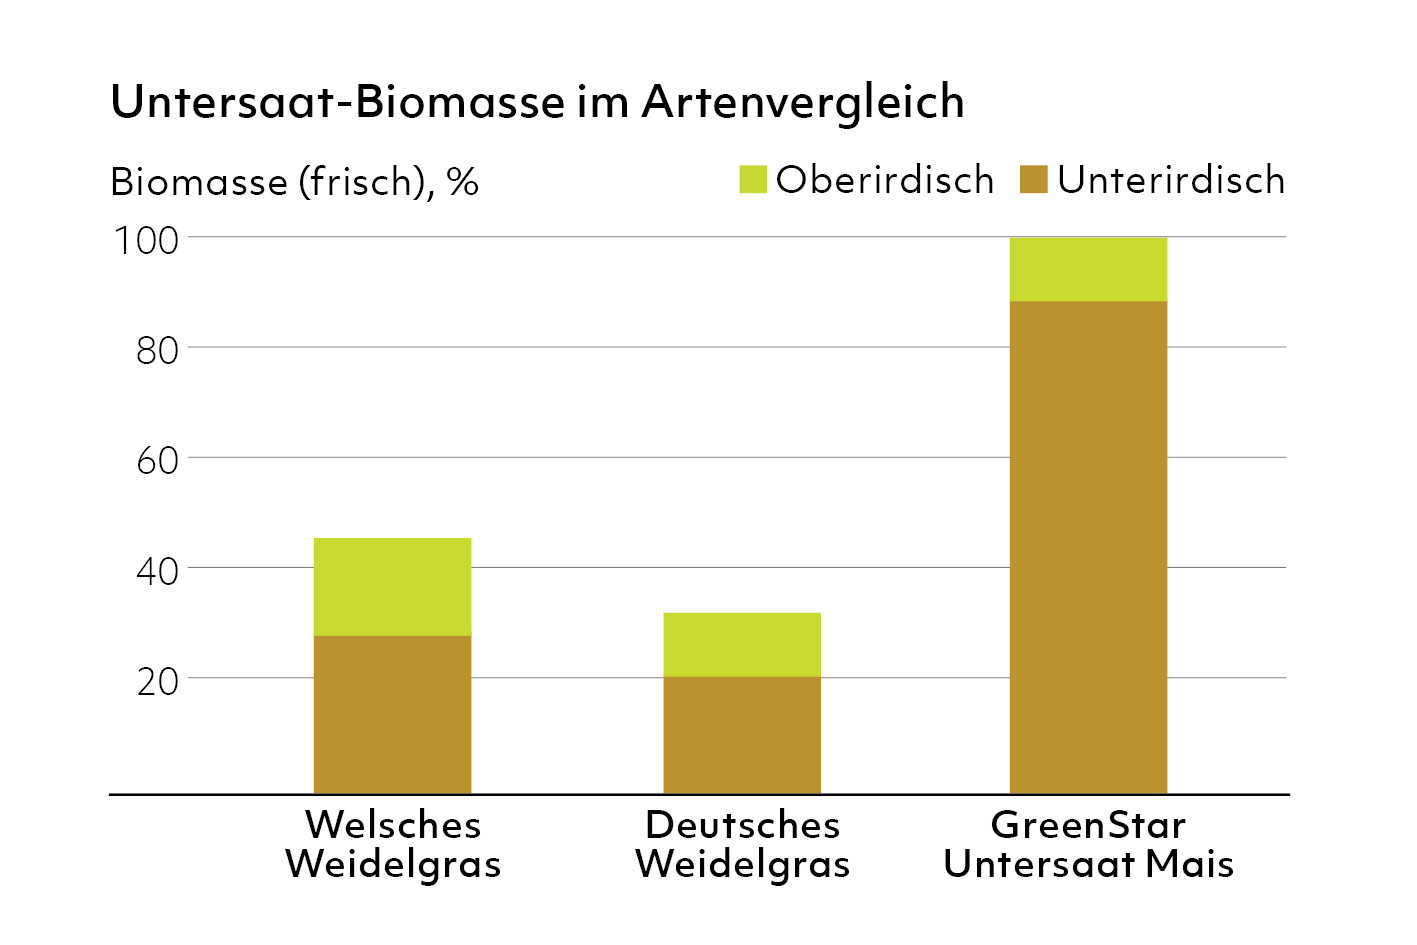 GreenStar Untersaat Mais - Biomasse Artenvergleich